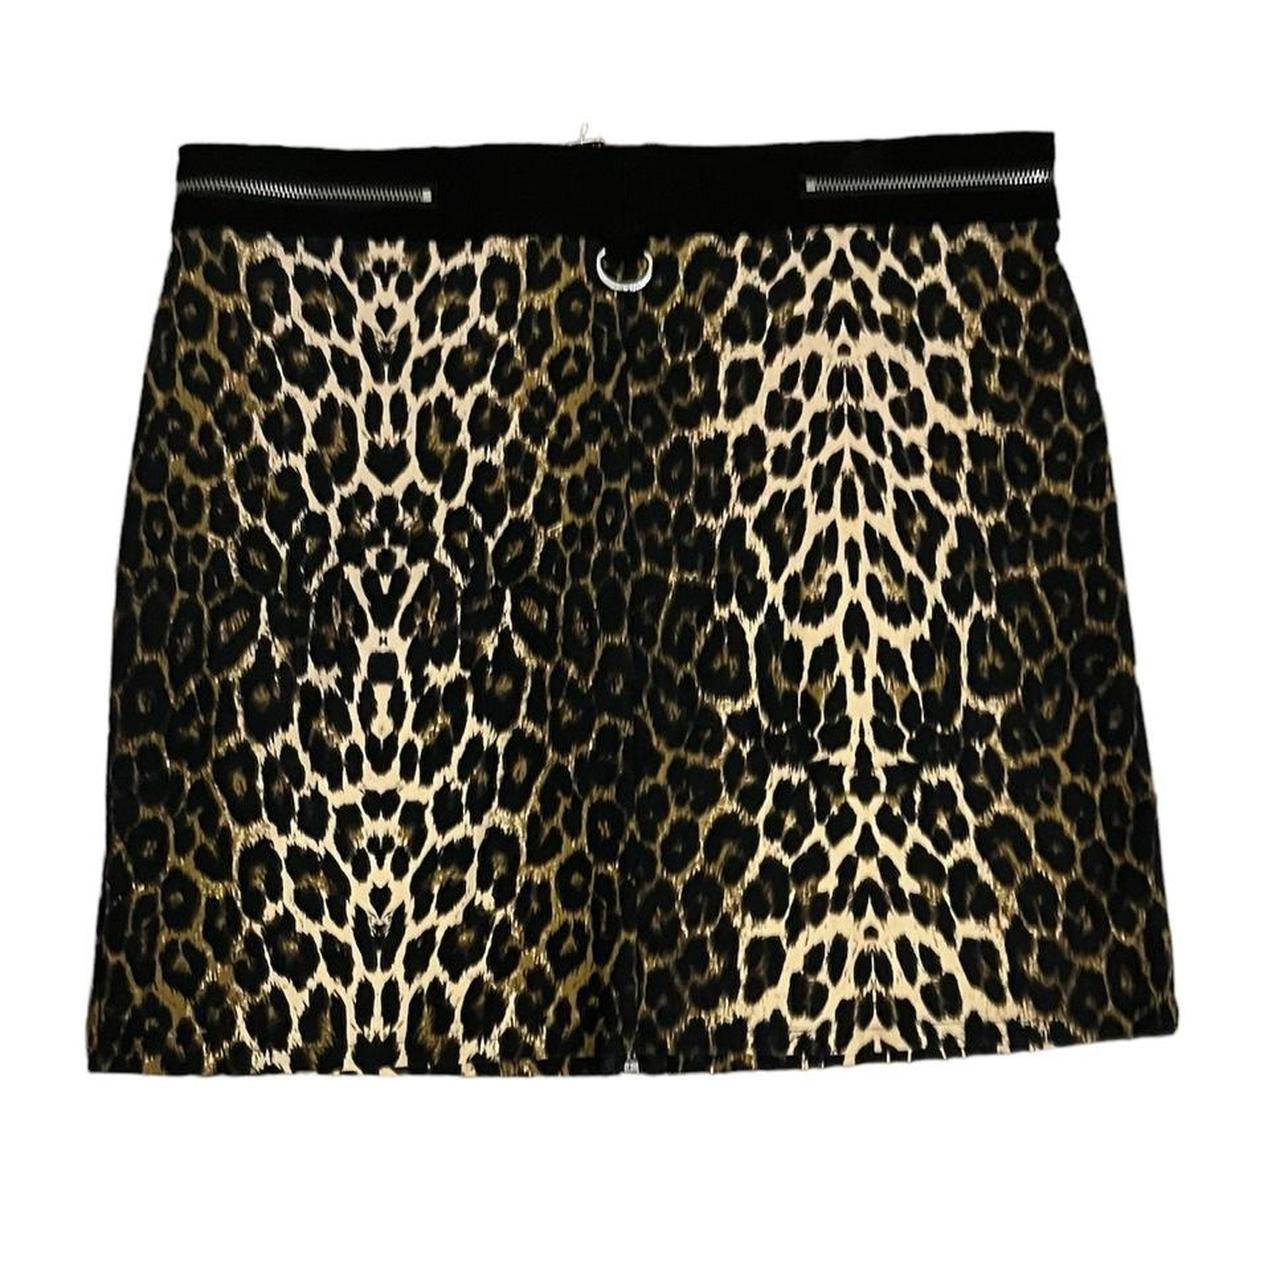 Killstar leopard/cheetah semi mini skirt Has cool... - Depop